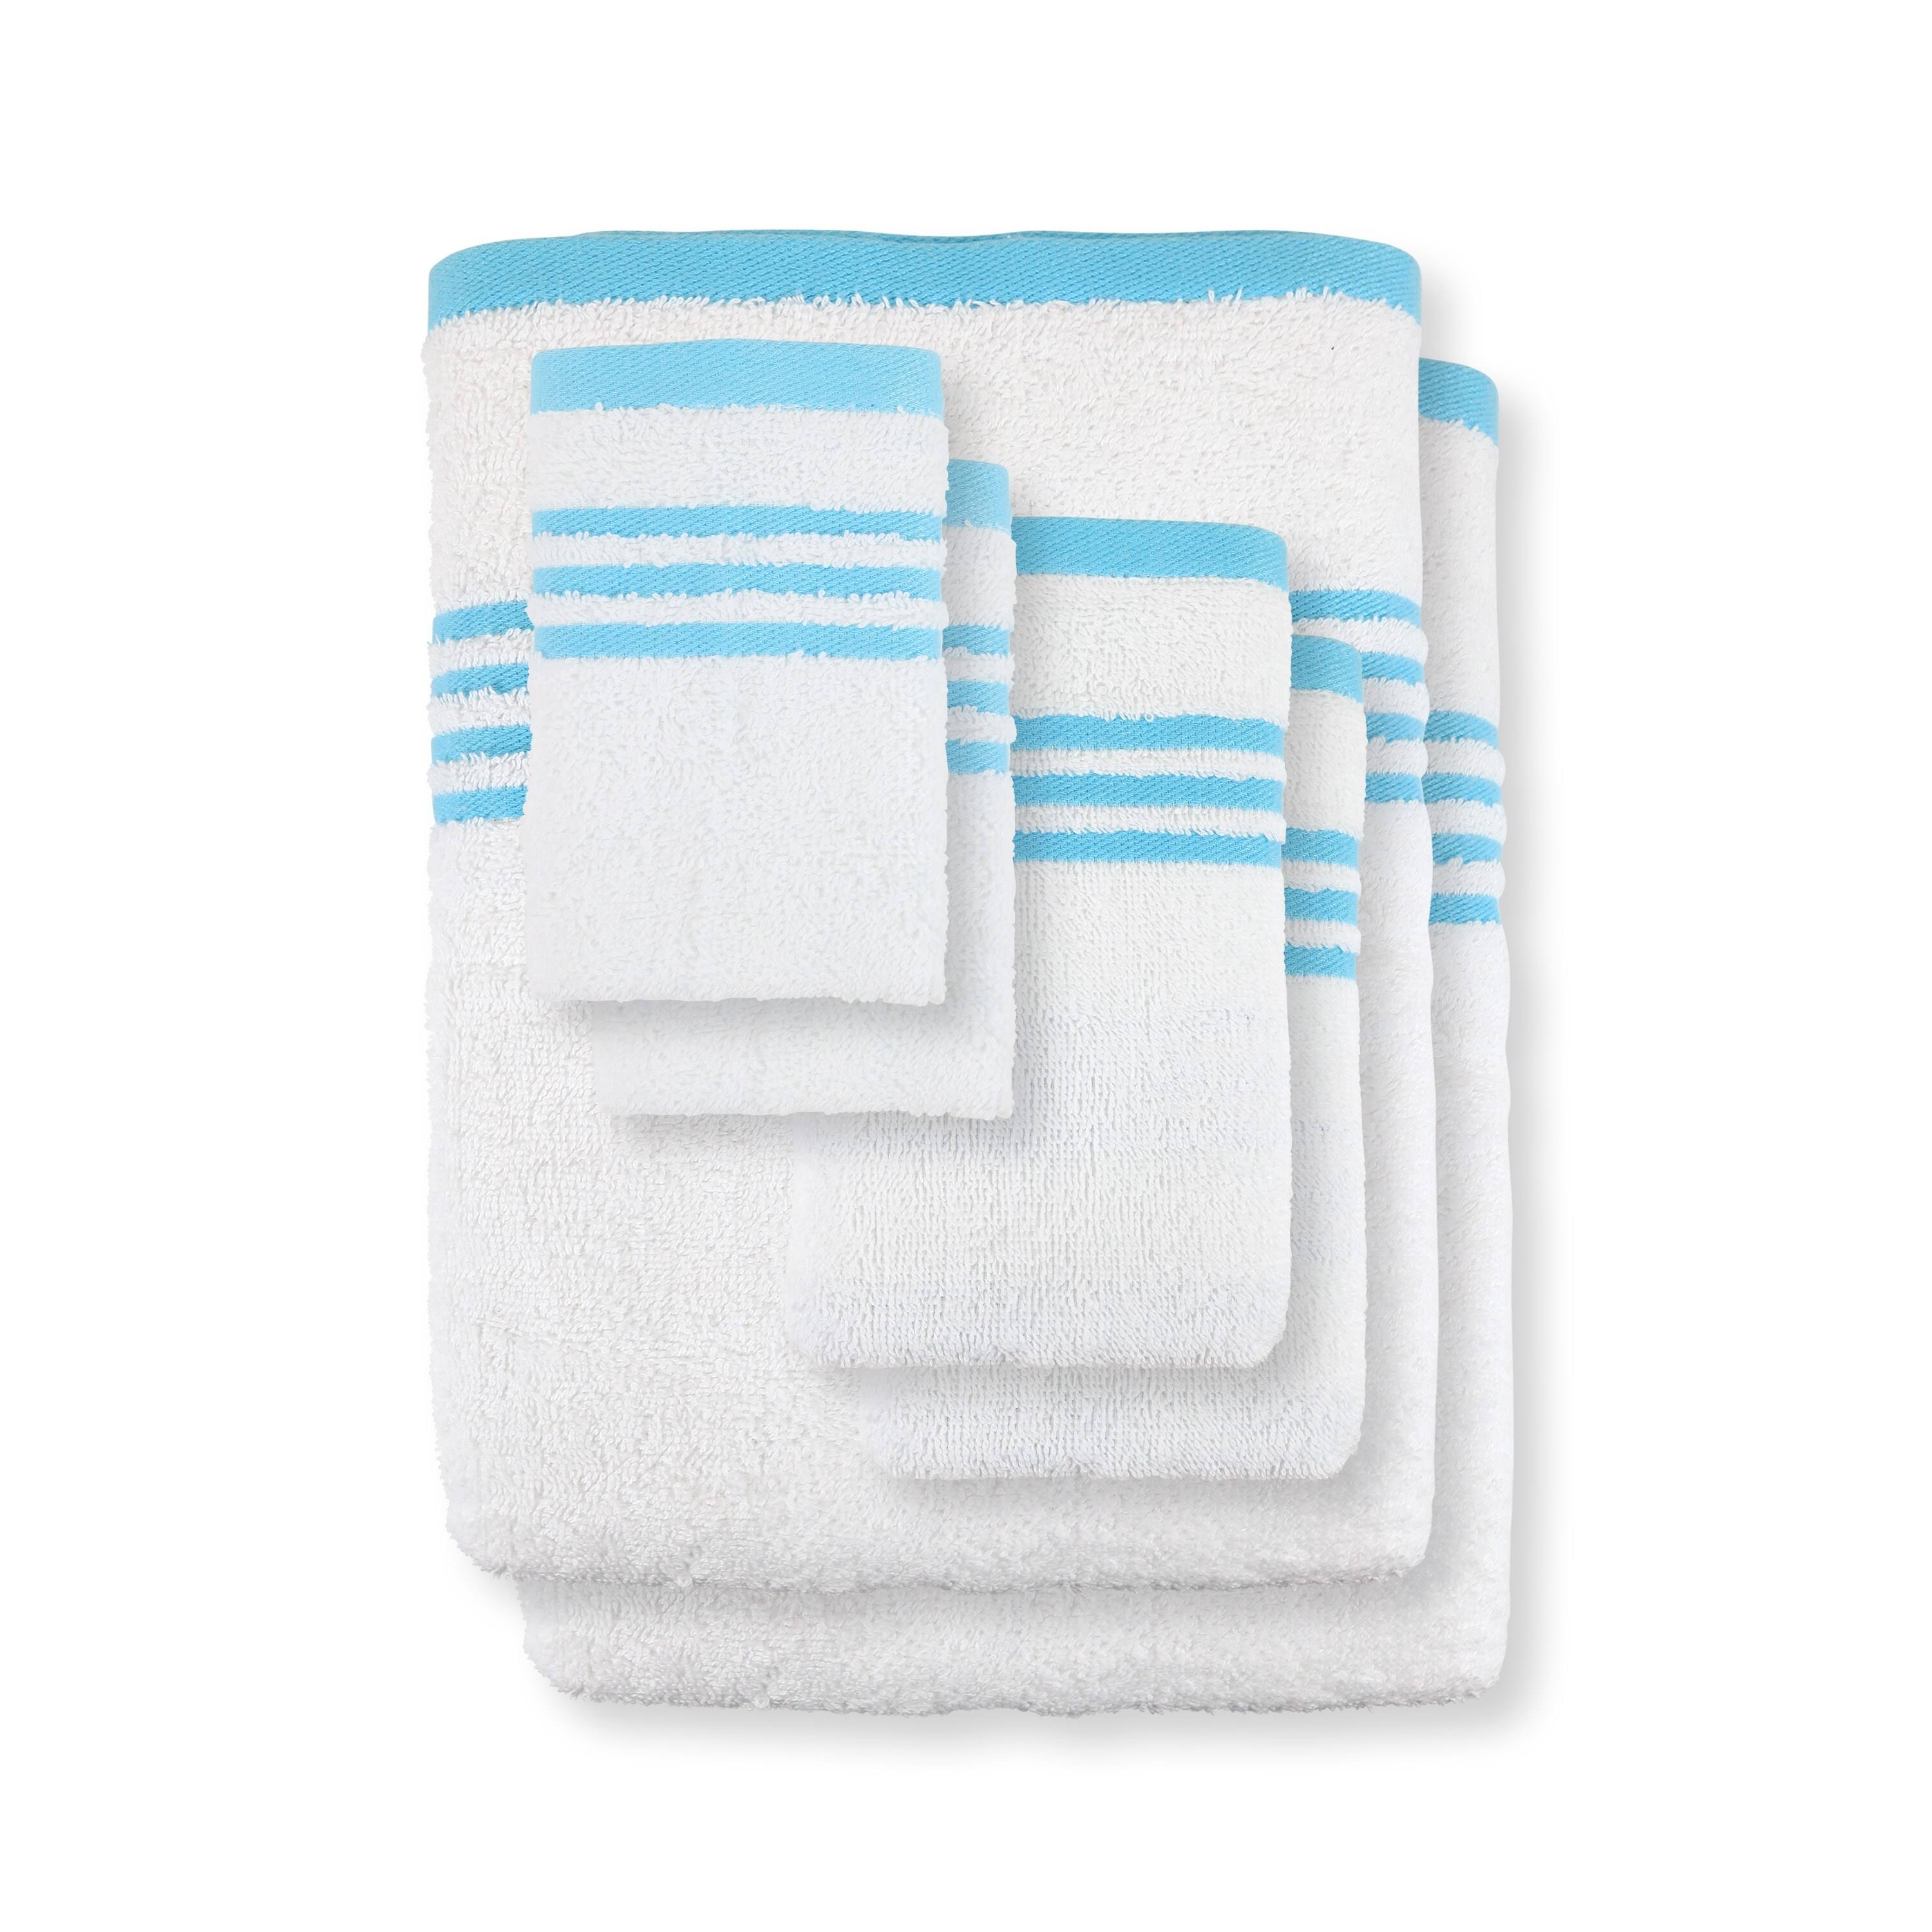 Metro 100% Cotton 6-Pc Towel Set, Striped Dobby - Aqua